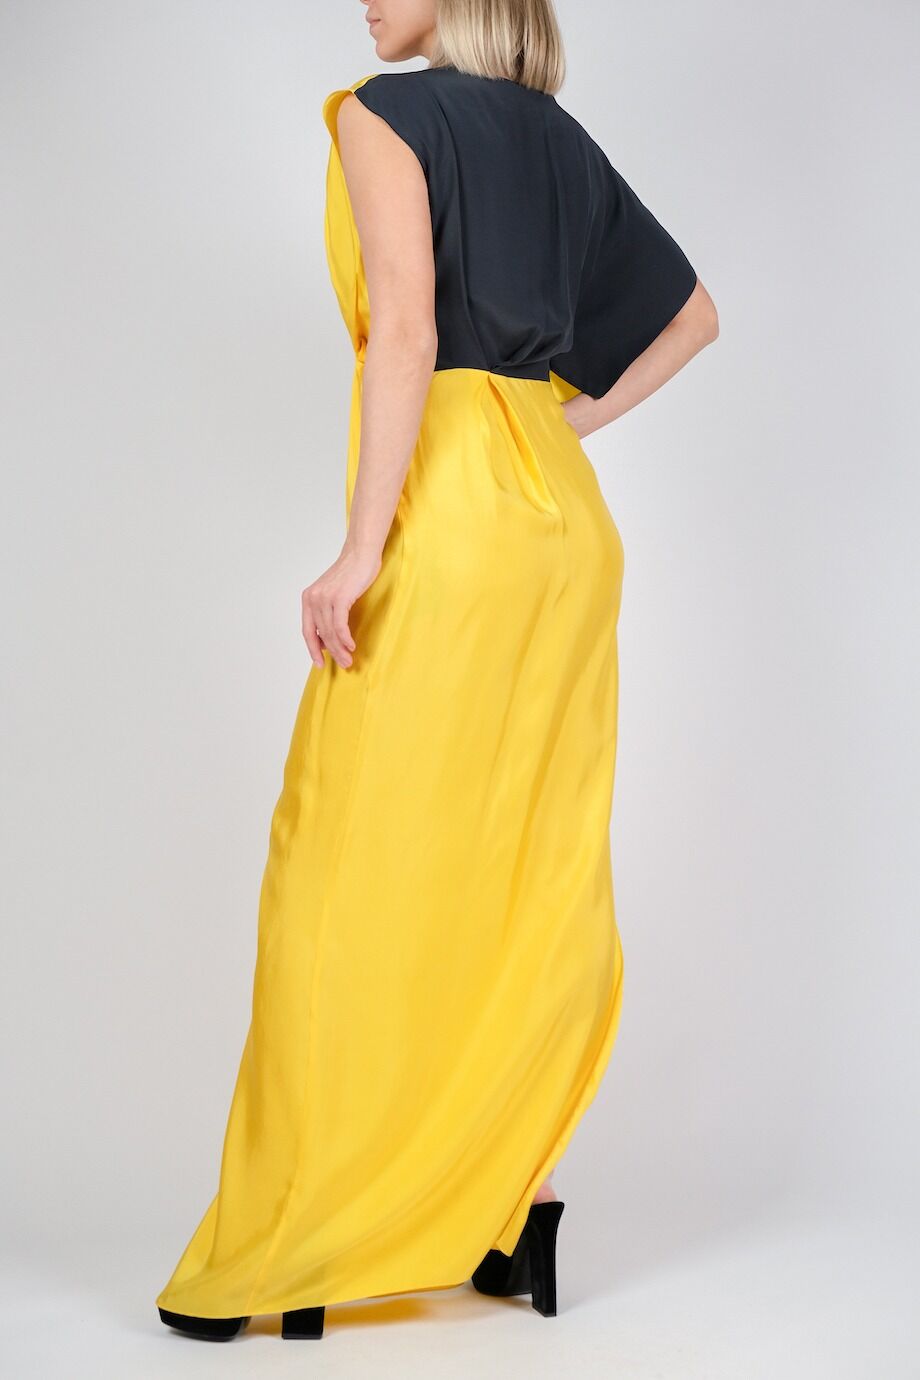 image 3 Платье в пол желтого цвета с черной спинкой